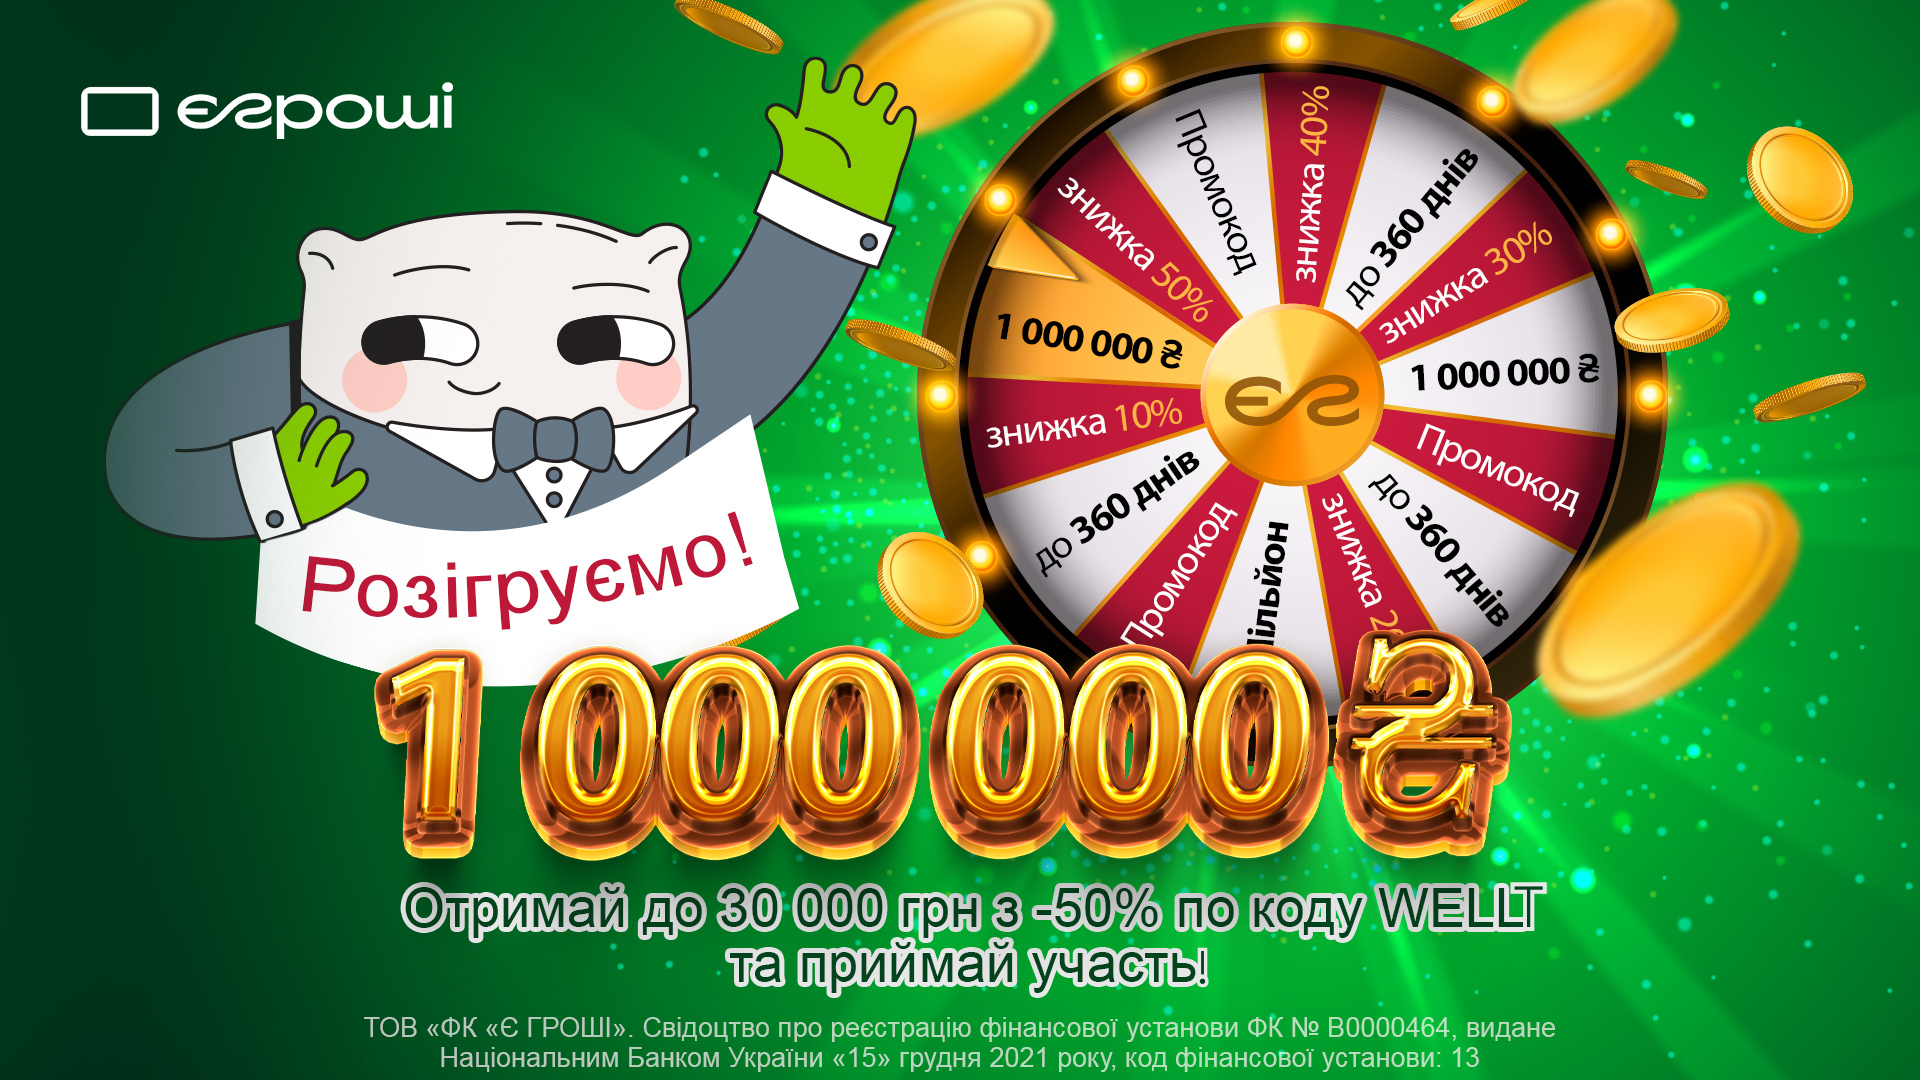 Гроші від Є Гроші - 1 000 000 грн на мрію!